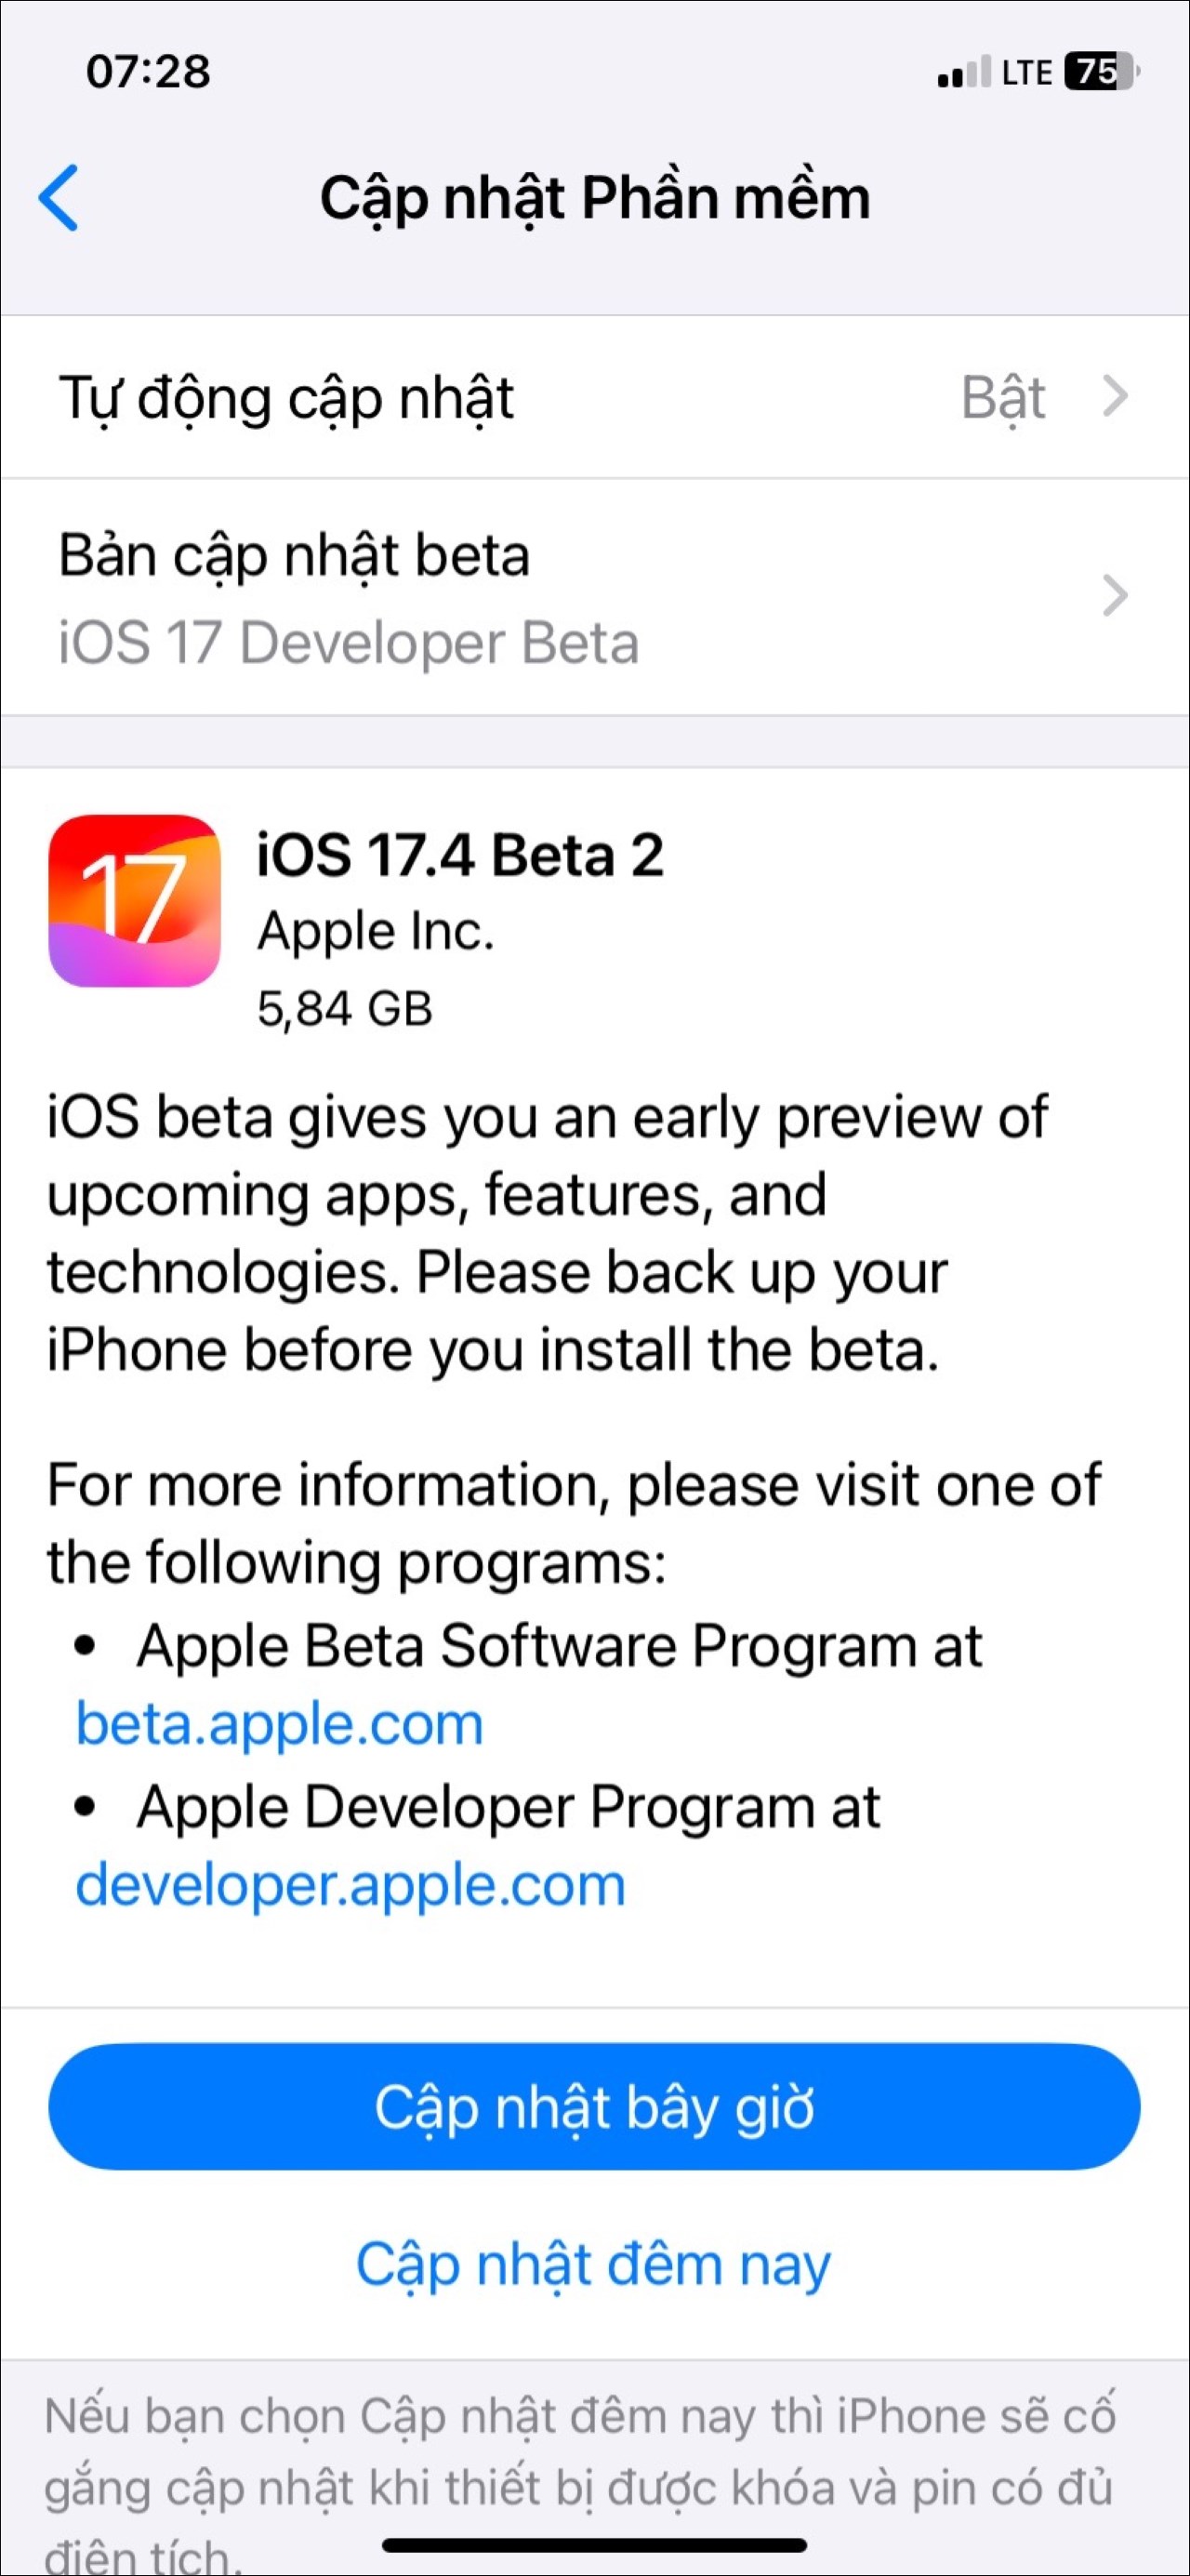 Những nhà phát triển đã đăng ký có thể tải xuống và cài đặt iOS 17.4 Beta 2